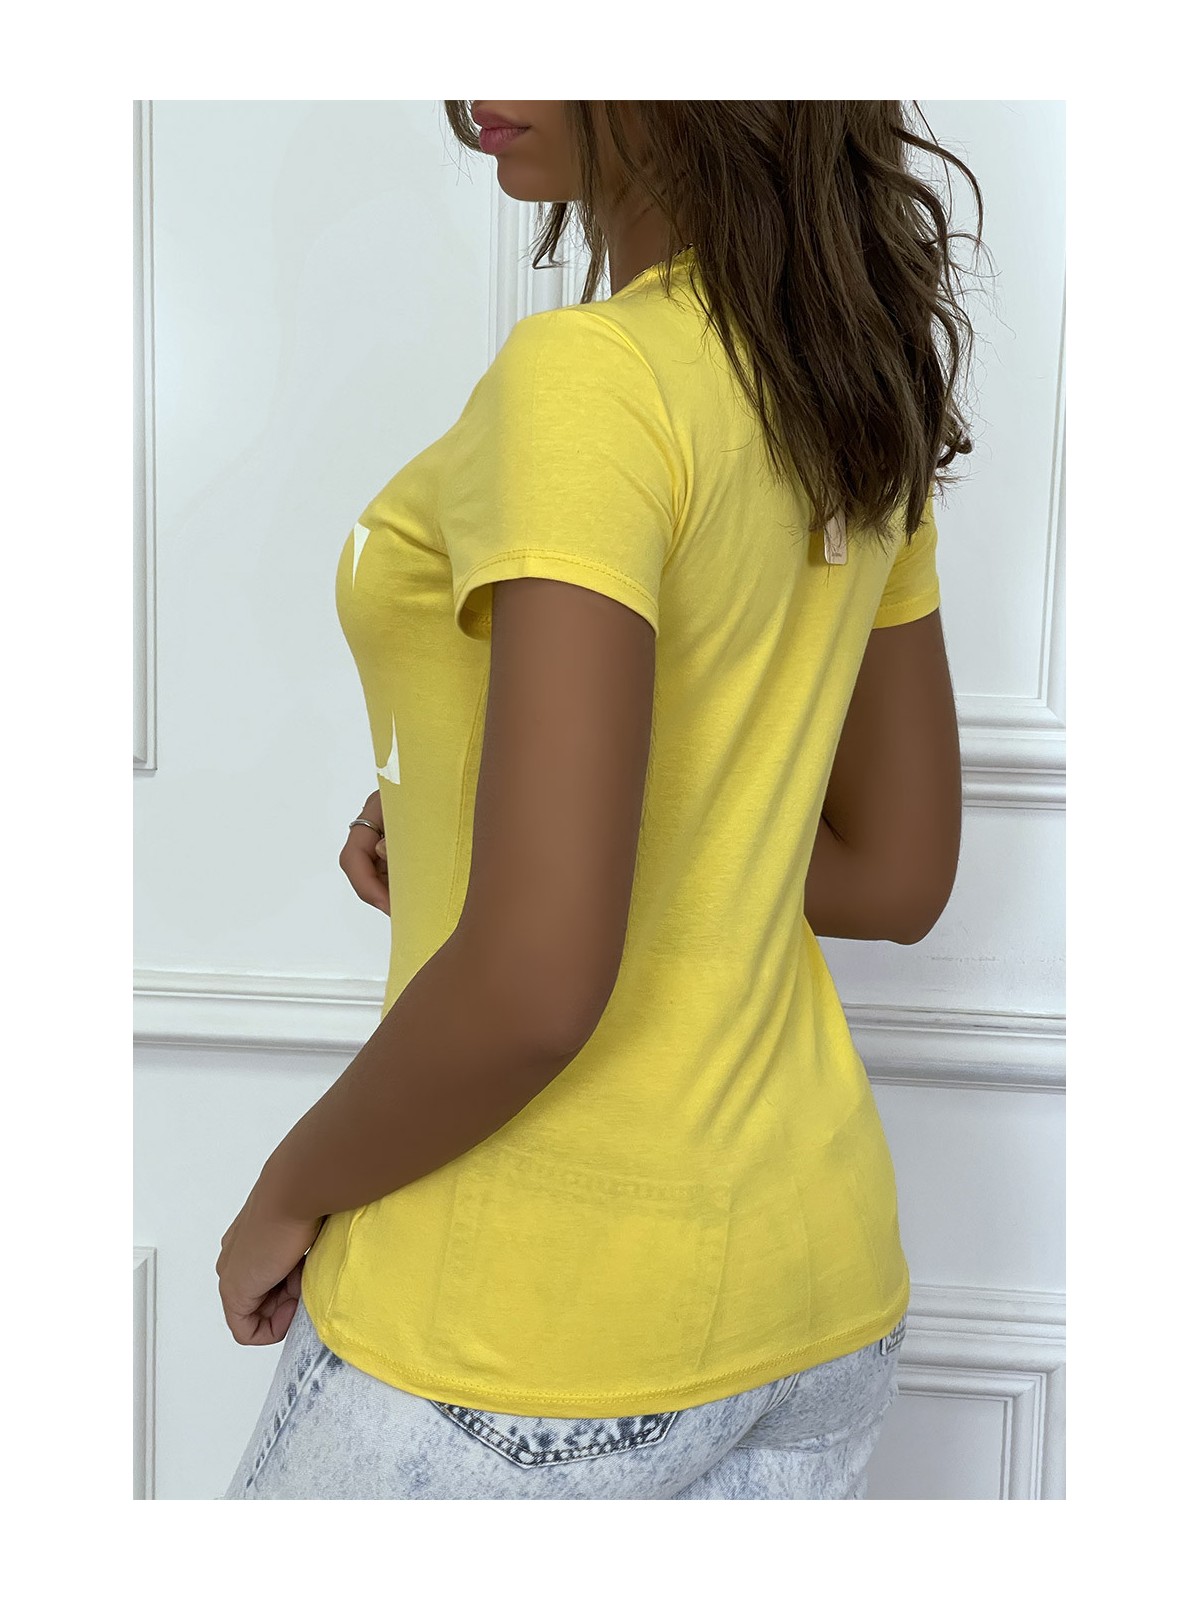 T-shirt basique jaune près du corps inscription "Love" - 1